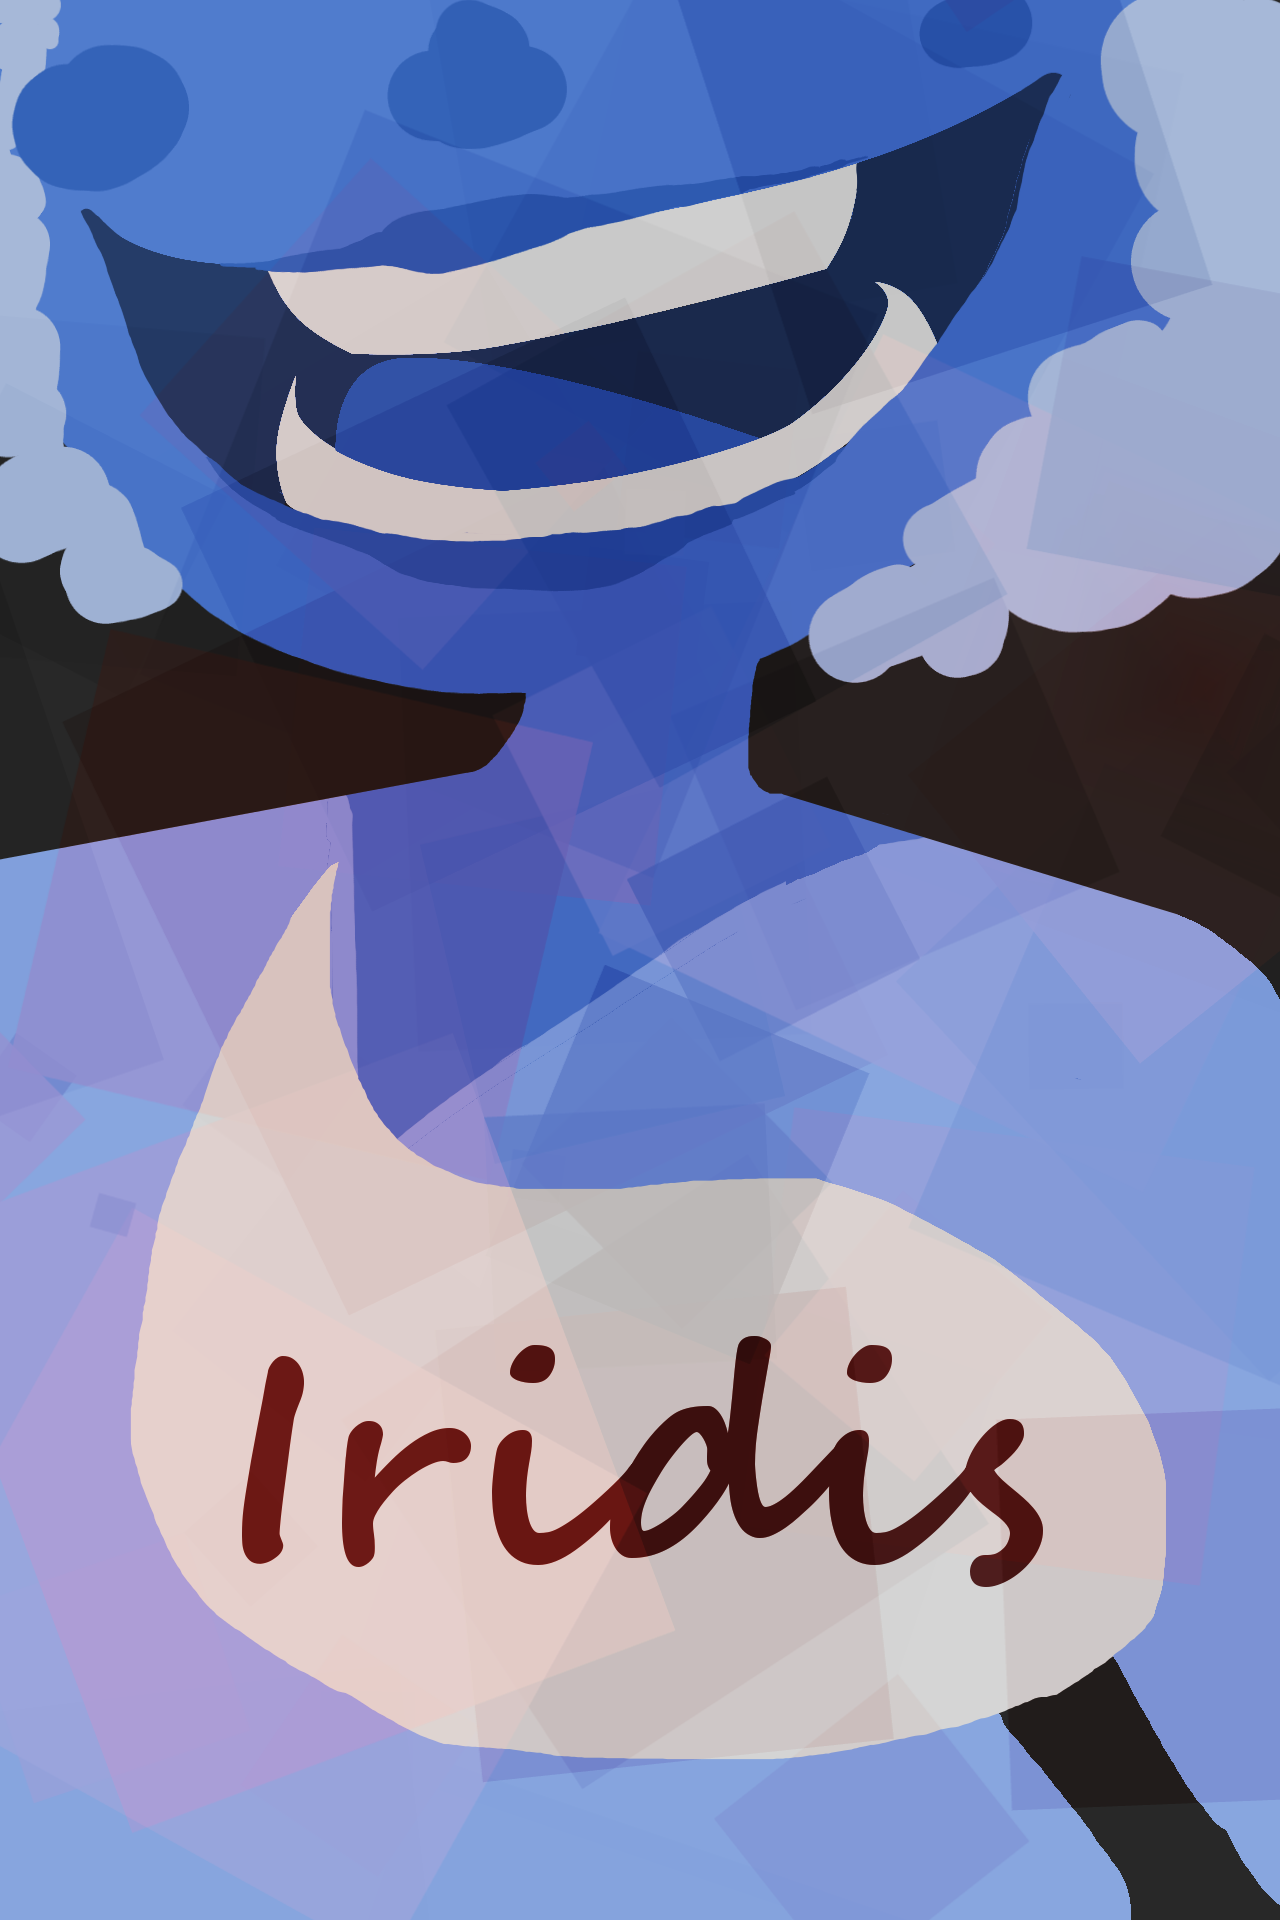 Iridis cover